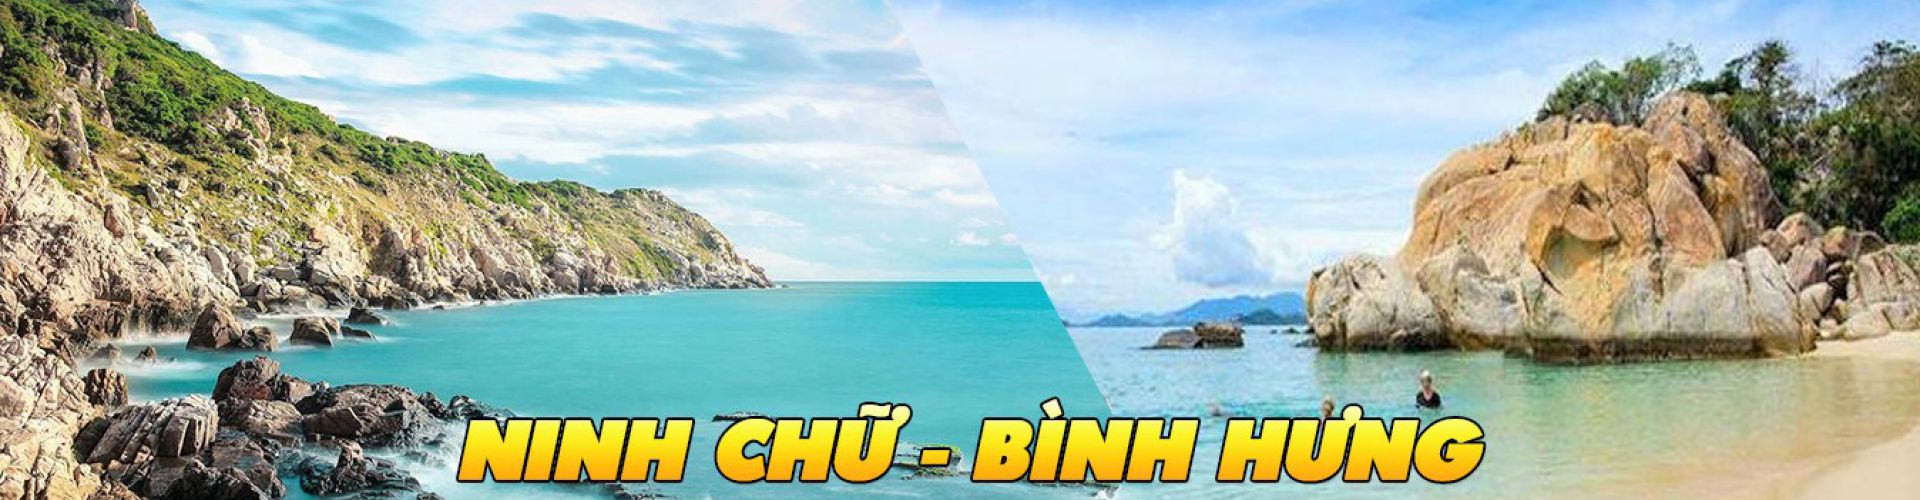 Các điểm du lịch tại Ninh Chử